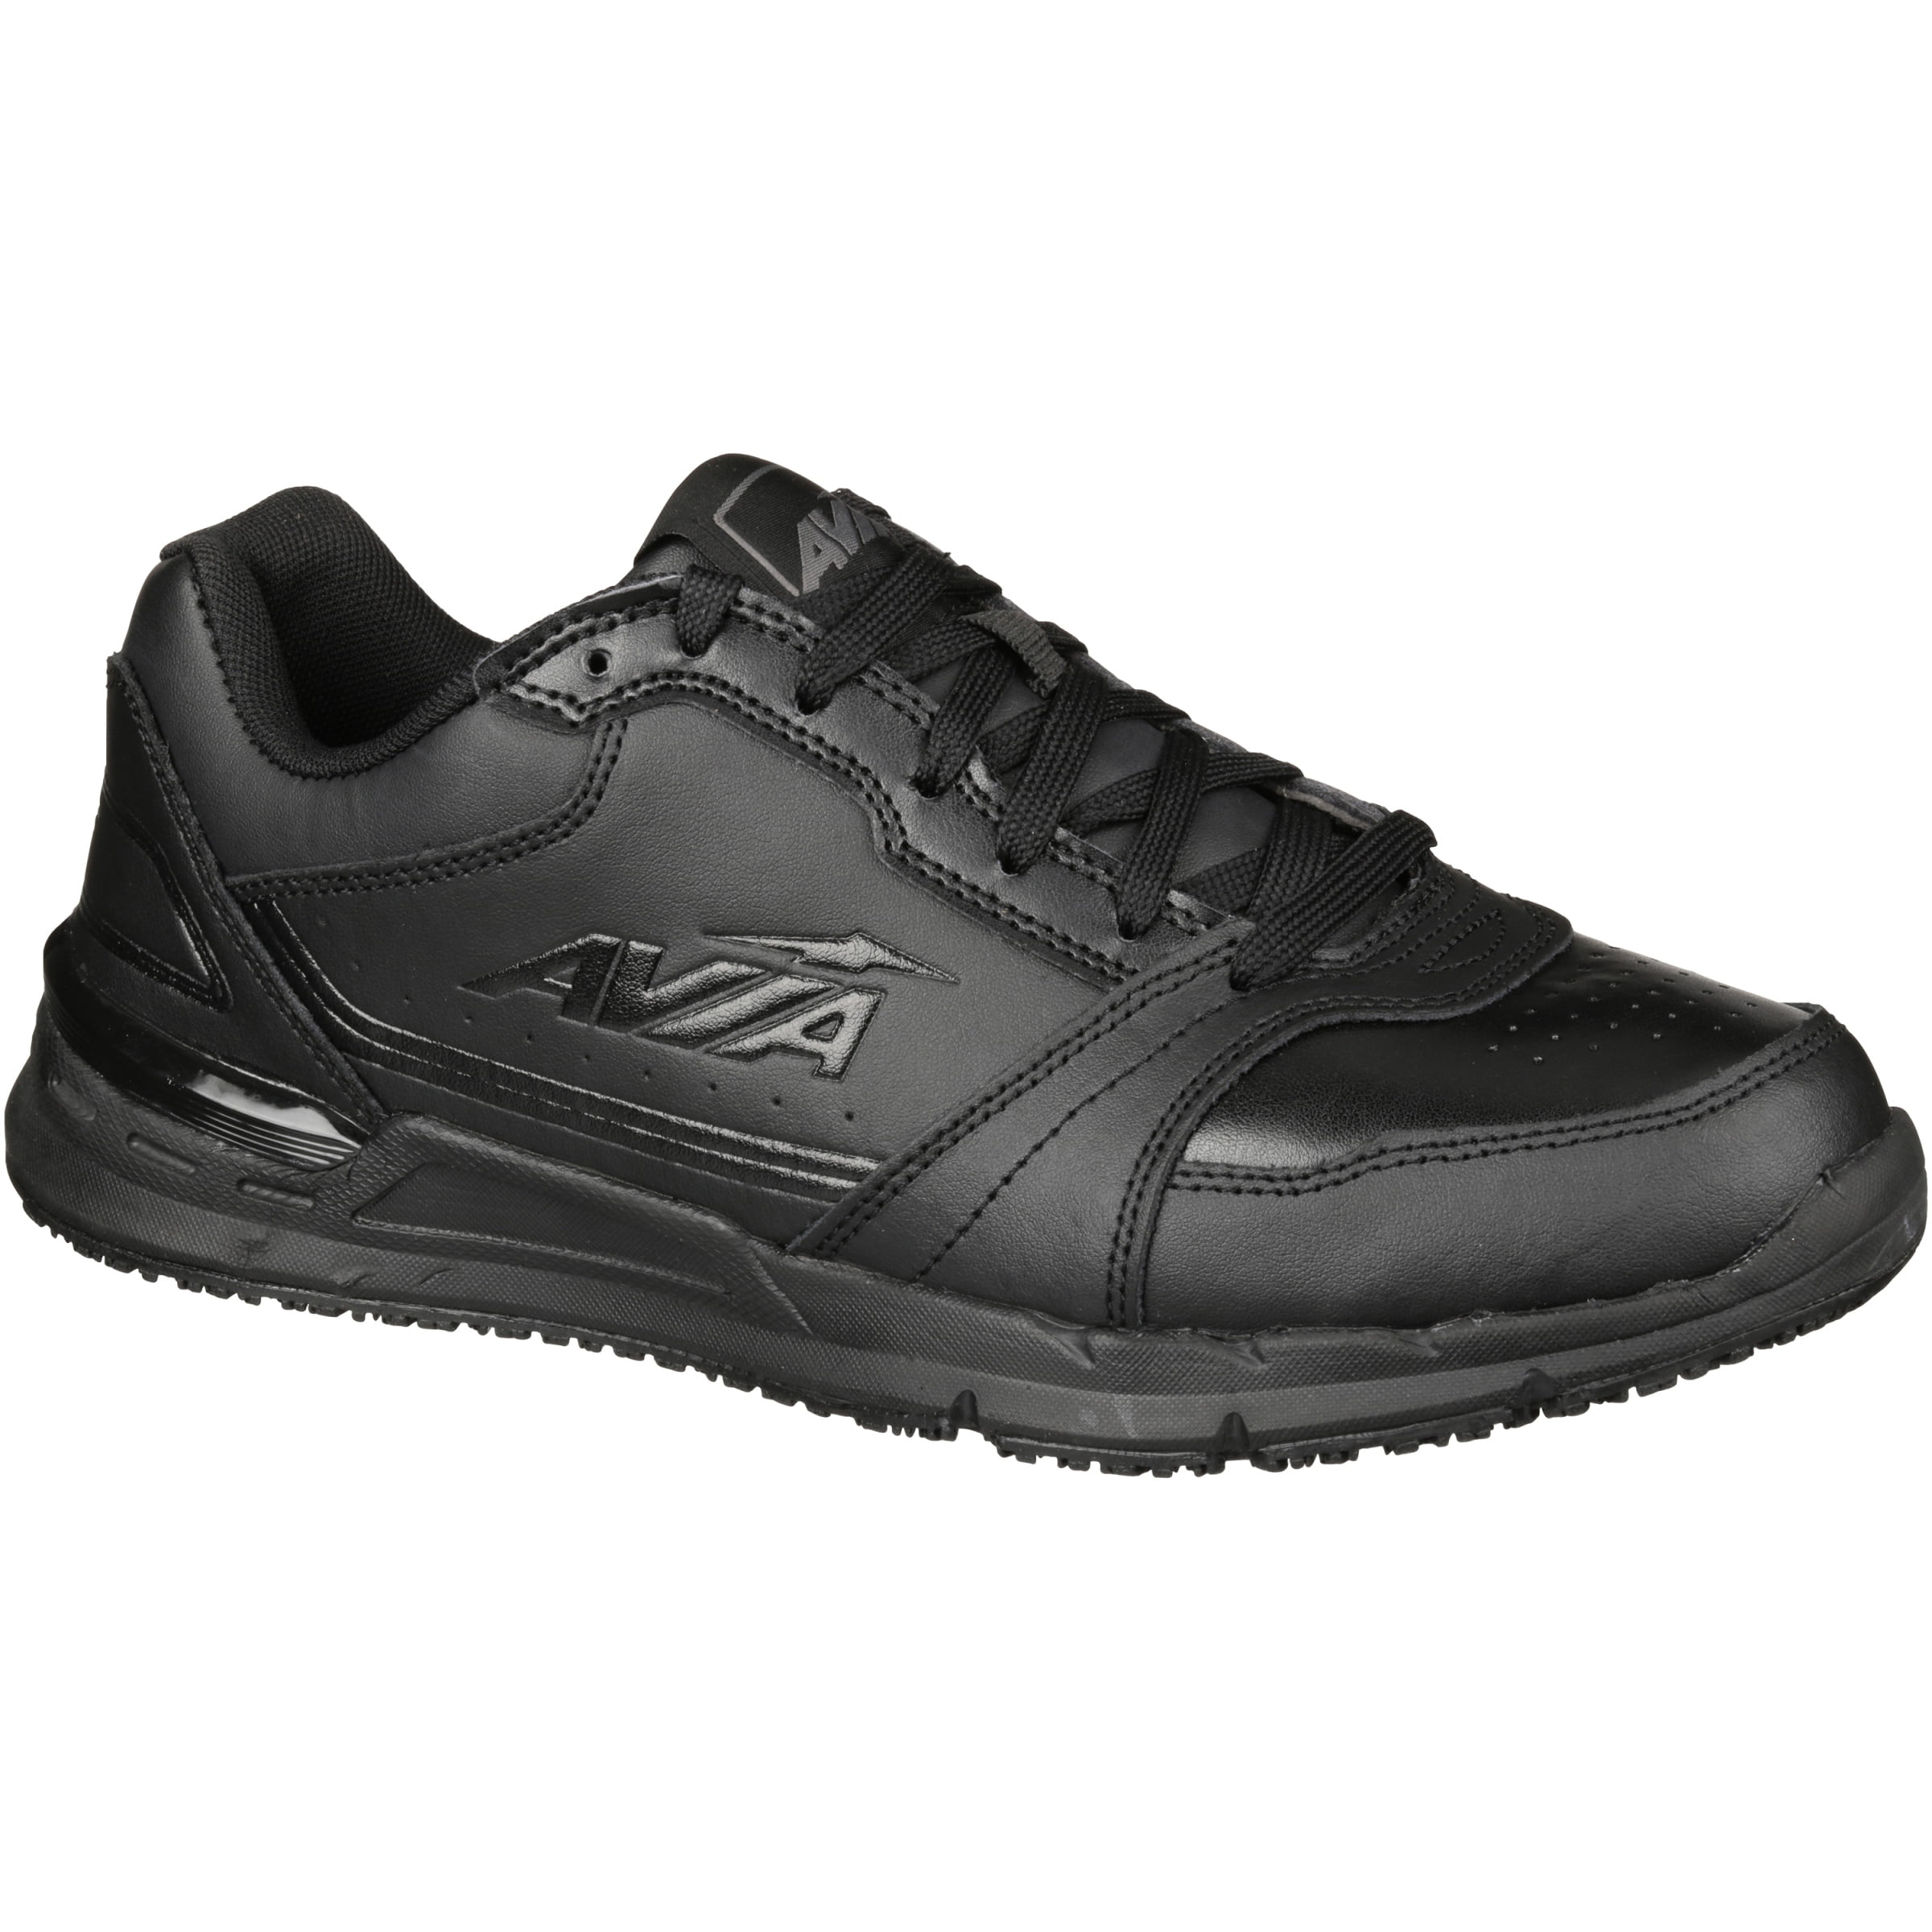 Anbenser Walking Shoes for Men Slip on Running Shoe Lightweight Breathable Non-Slip（Grey,12DM）